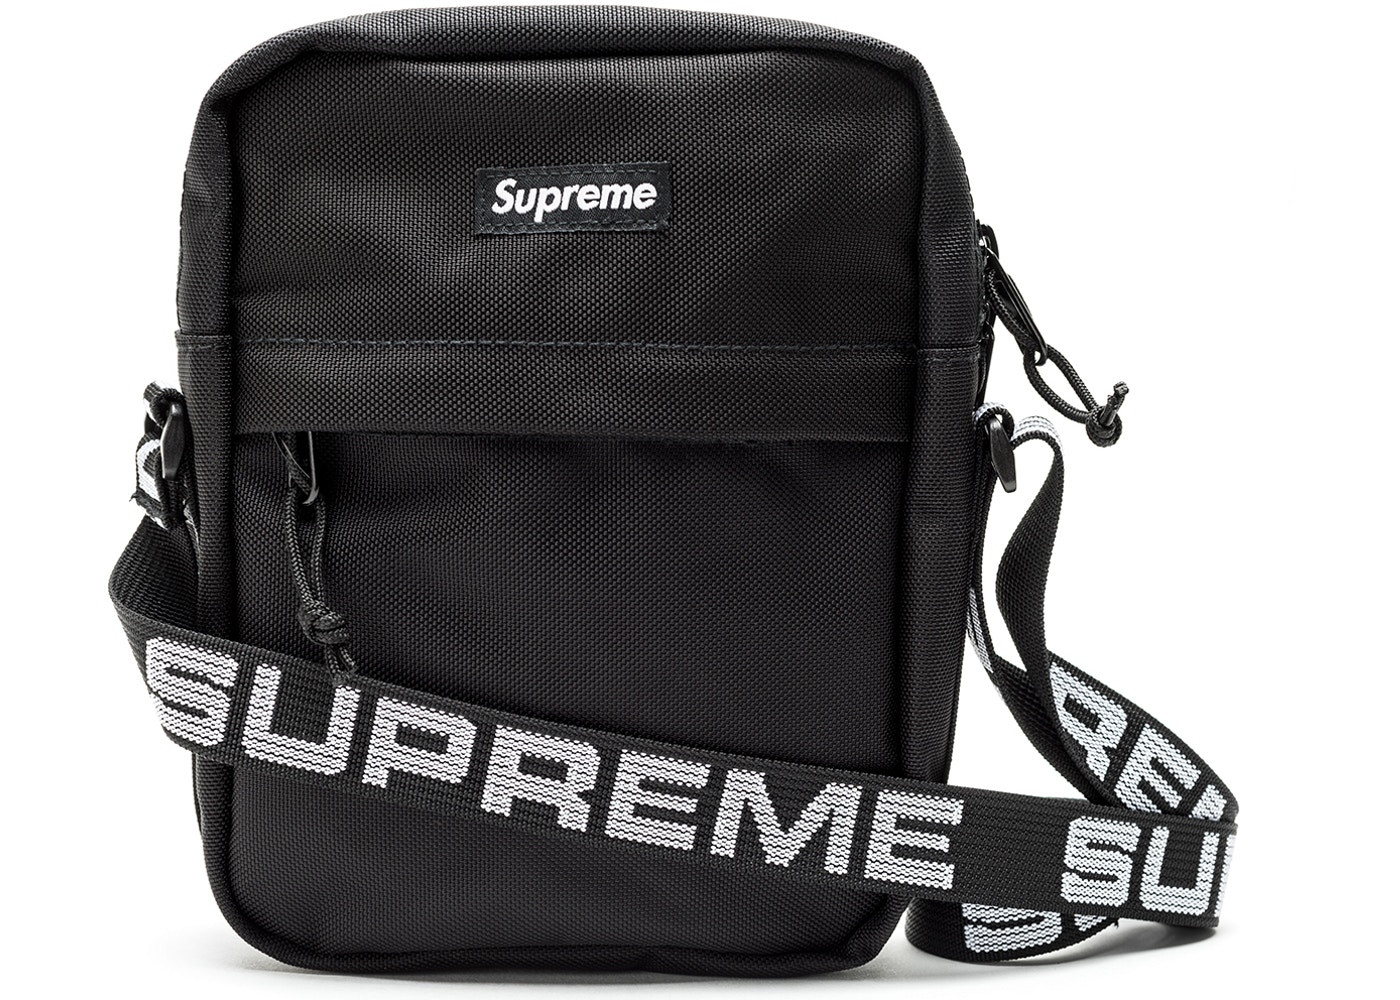 Supreme Shoulder Bag "Black" 2018